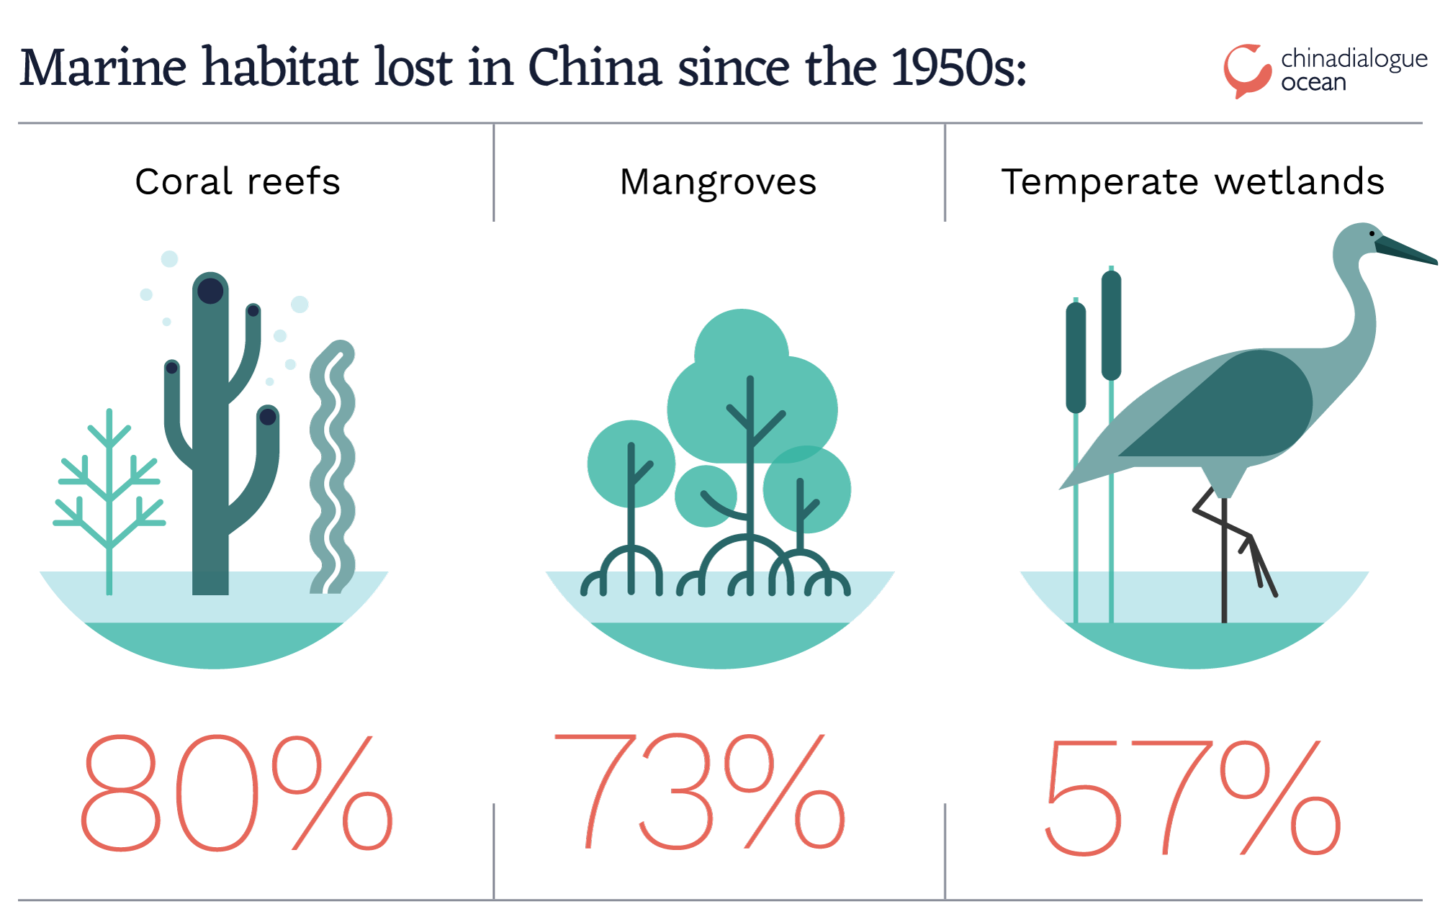 MPAs work - China habitat loss